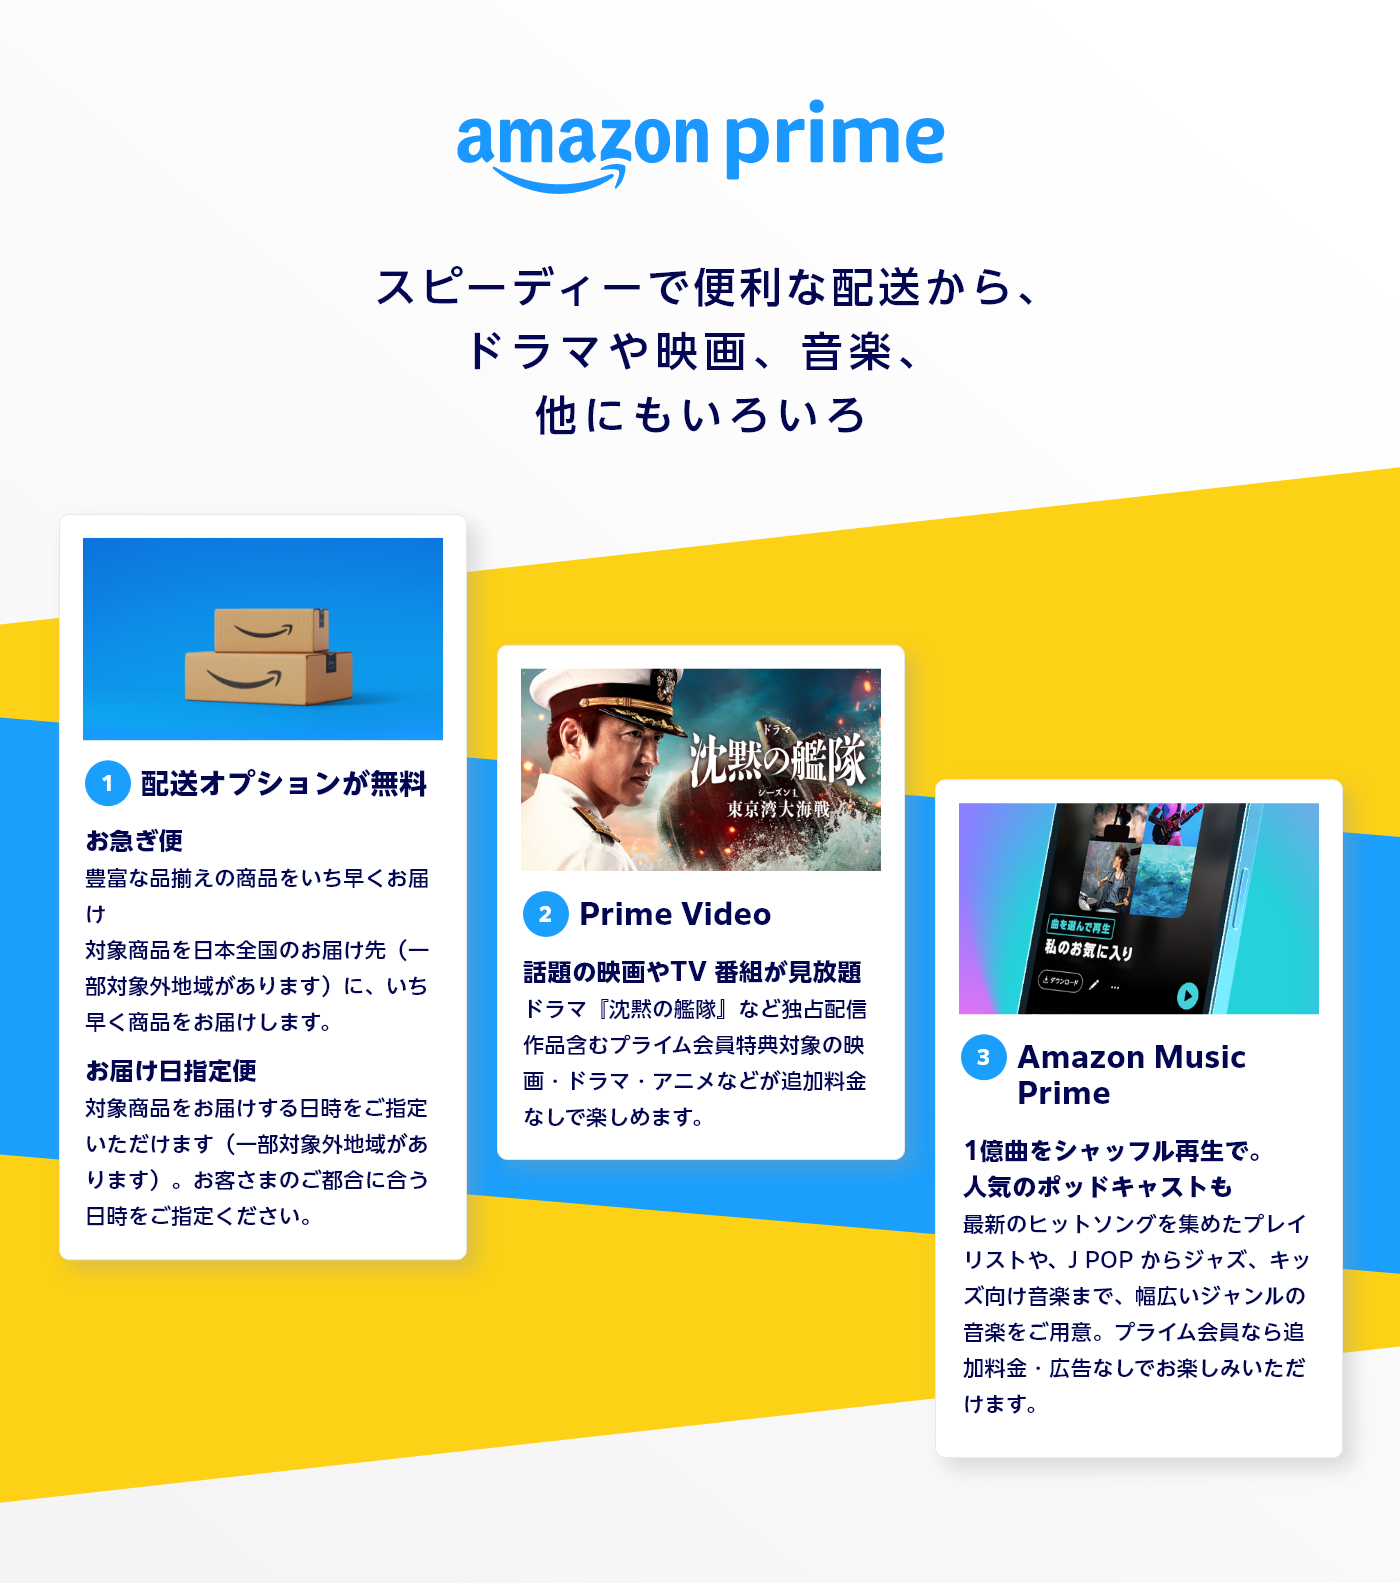 Amazon プライム 3つの魅力 ①配送オプションが無料 お急ぎ便 豊富な品揃えの商品をいち早くお届け 対象商品を日本全国のお届け先（一部対象外地域があります）に、いち早く商品をお届けします。 お届け日指定便 対象商品をお届けする日時をご指定いただけます（一部対象外地域があります）。お客さまのご都合に合う日時をご指定ください。 ②Prime Video 話題の映画やTV 番組が見放題 ドラマ『沈黙の艦隊』など独占配信作品含むプライム会員特典対象の映画・ドラマ・アニメなどが追加料金なしで楽しめます。 ③Amazon Music Prime 1億曲をシャッフル再生で。 人気のポッドキャストも最新のヒットソングを集めたプレイリストや、J POP からジャズ、キッズ向け音楽まで、幅広いジャンルの音楽をご用意。プライム会員なら追加料金・広告なしでお楽しみいただけます。